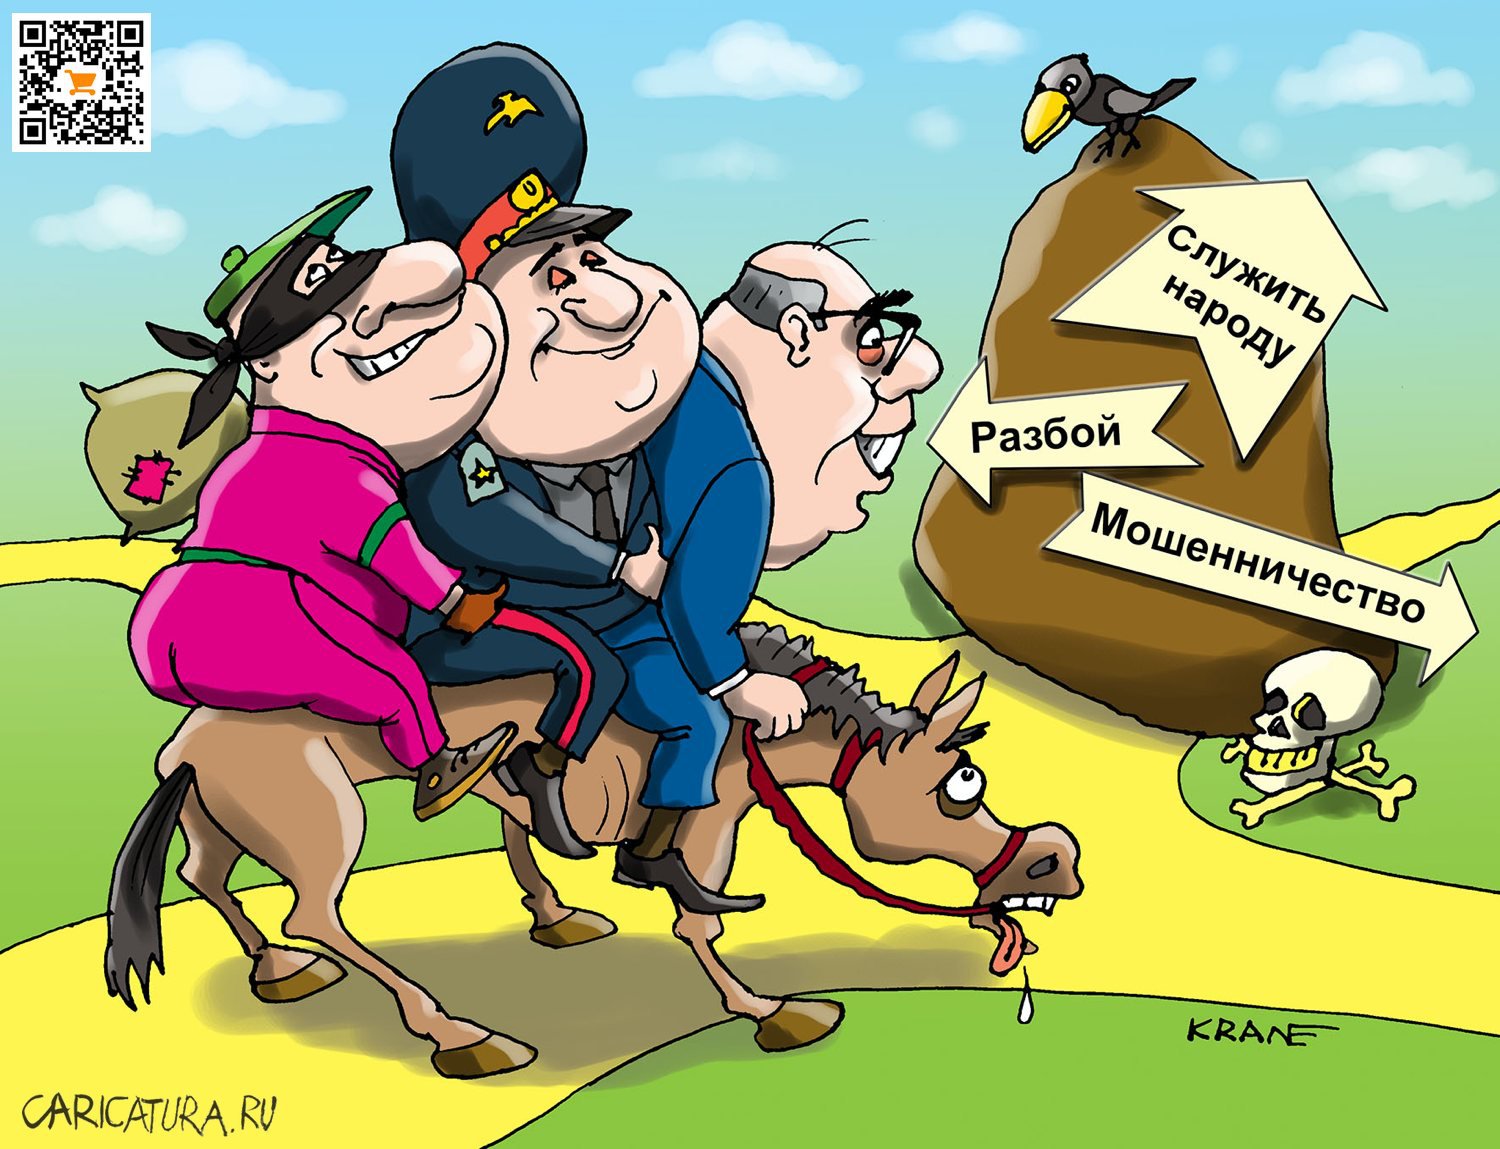 Карикатура "Если подросток подлец и хам", Евгений Кран